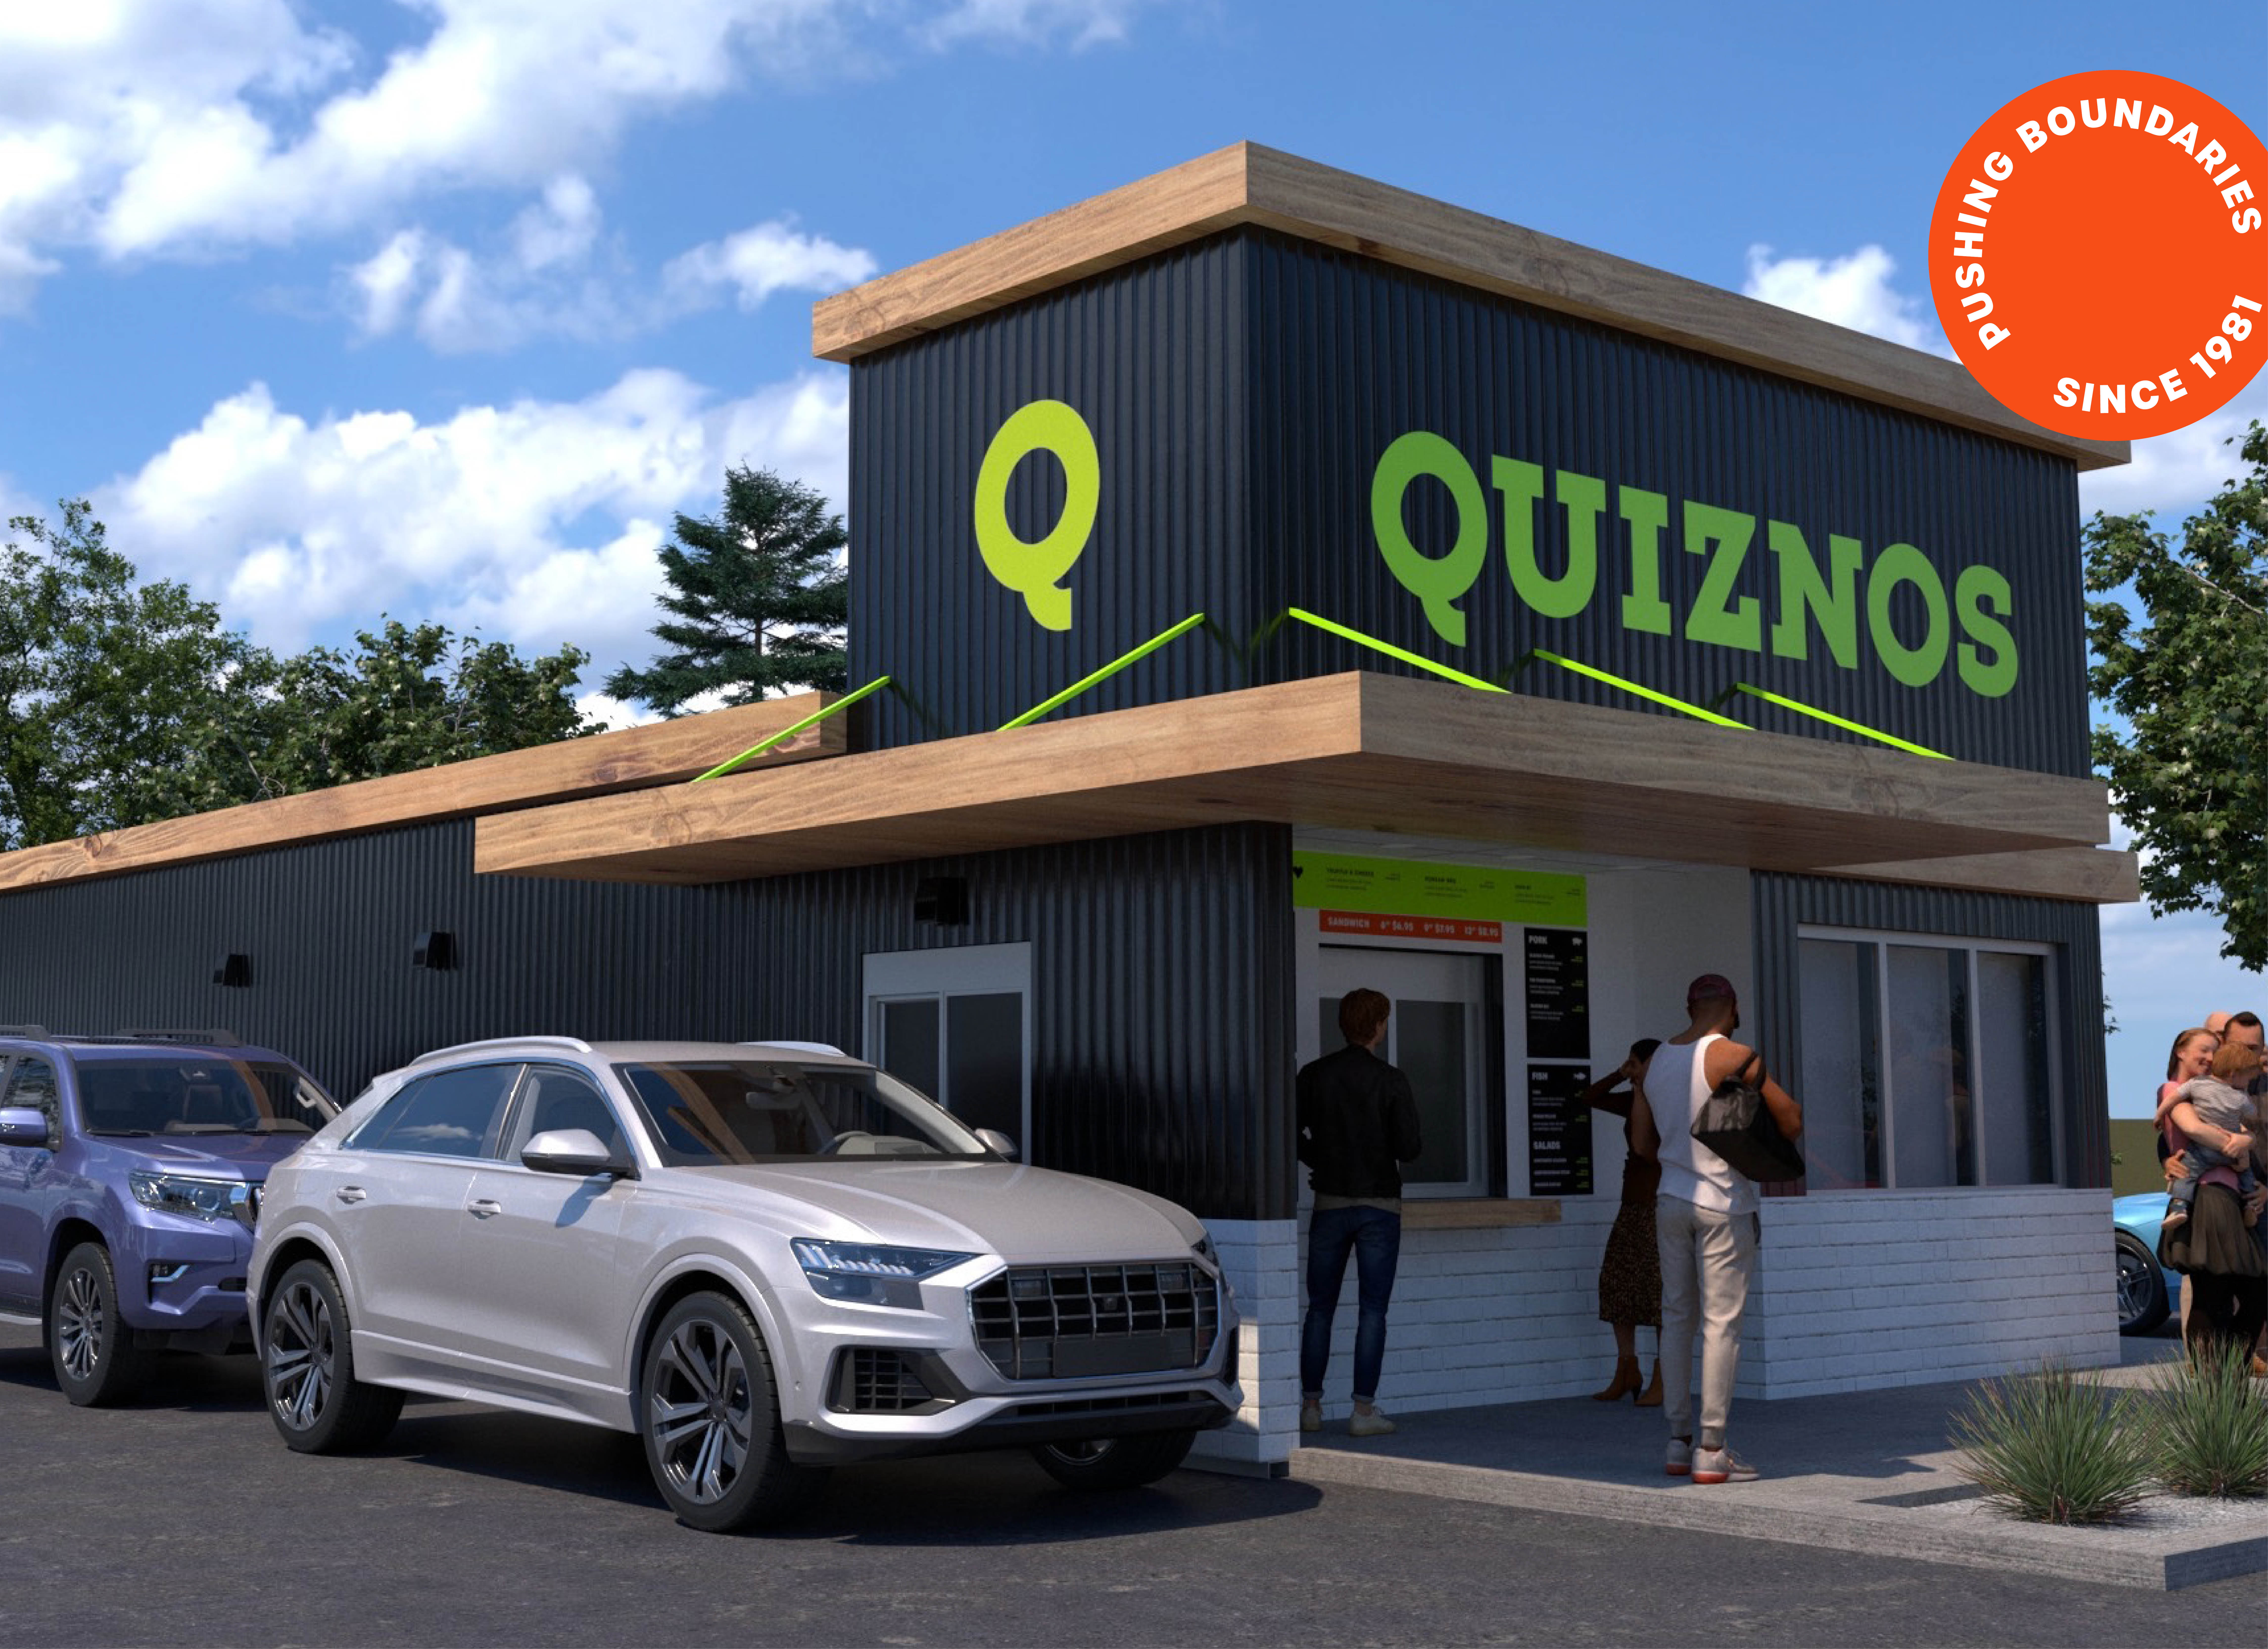 Quiznos franchise exterior building